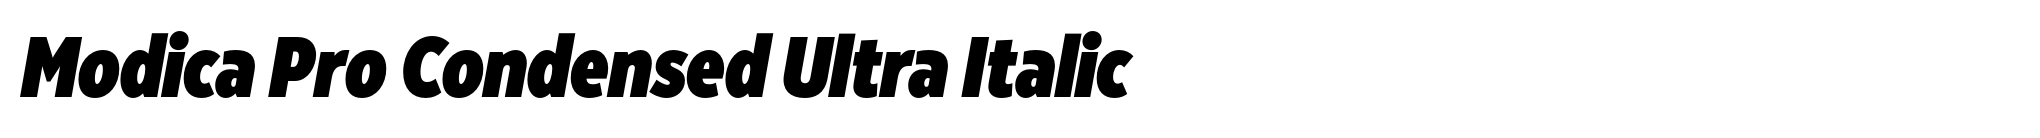 Modica Pro Condensed Ultra Italic image